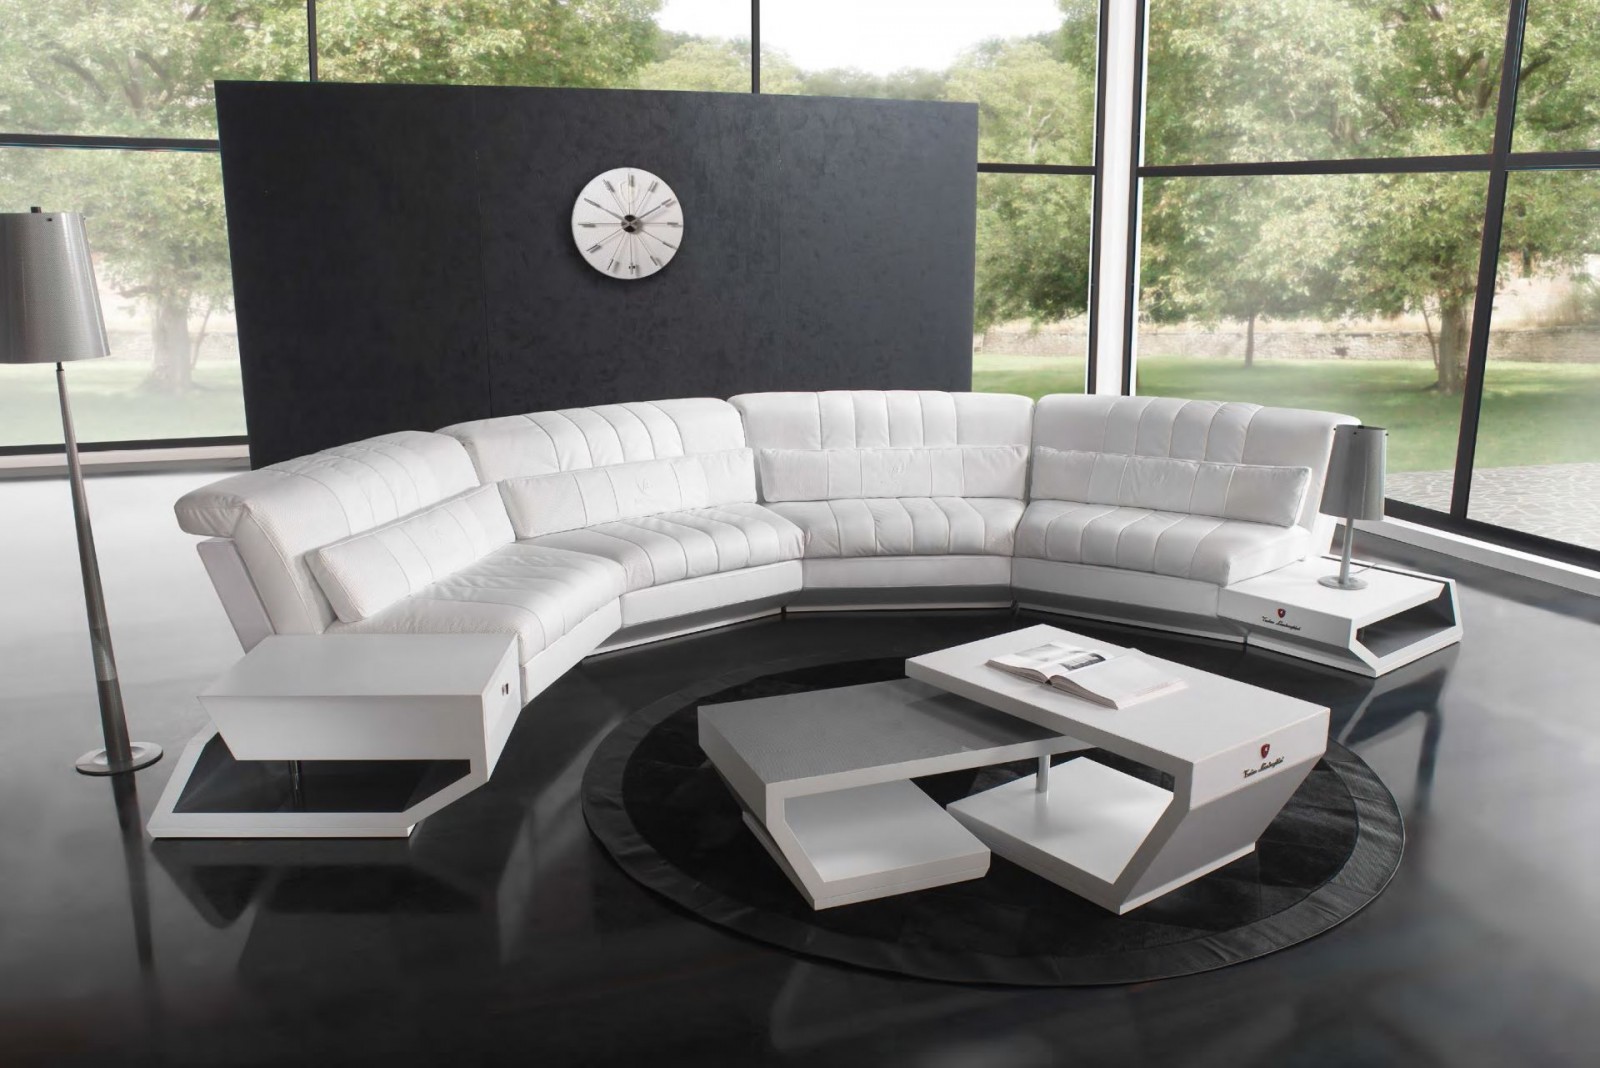 Диван - fmi/937. Полукруглый белый кожаный диван со столиком и тумбой отфабрики Formitalia